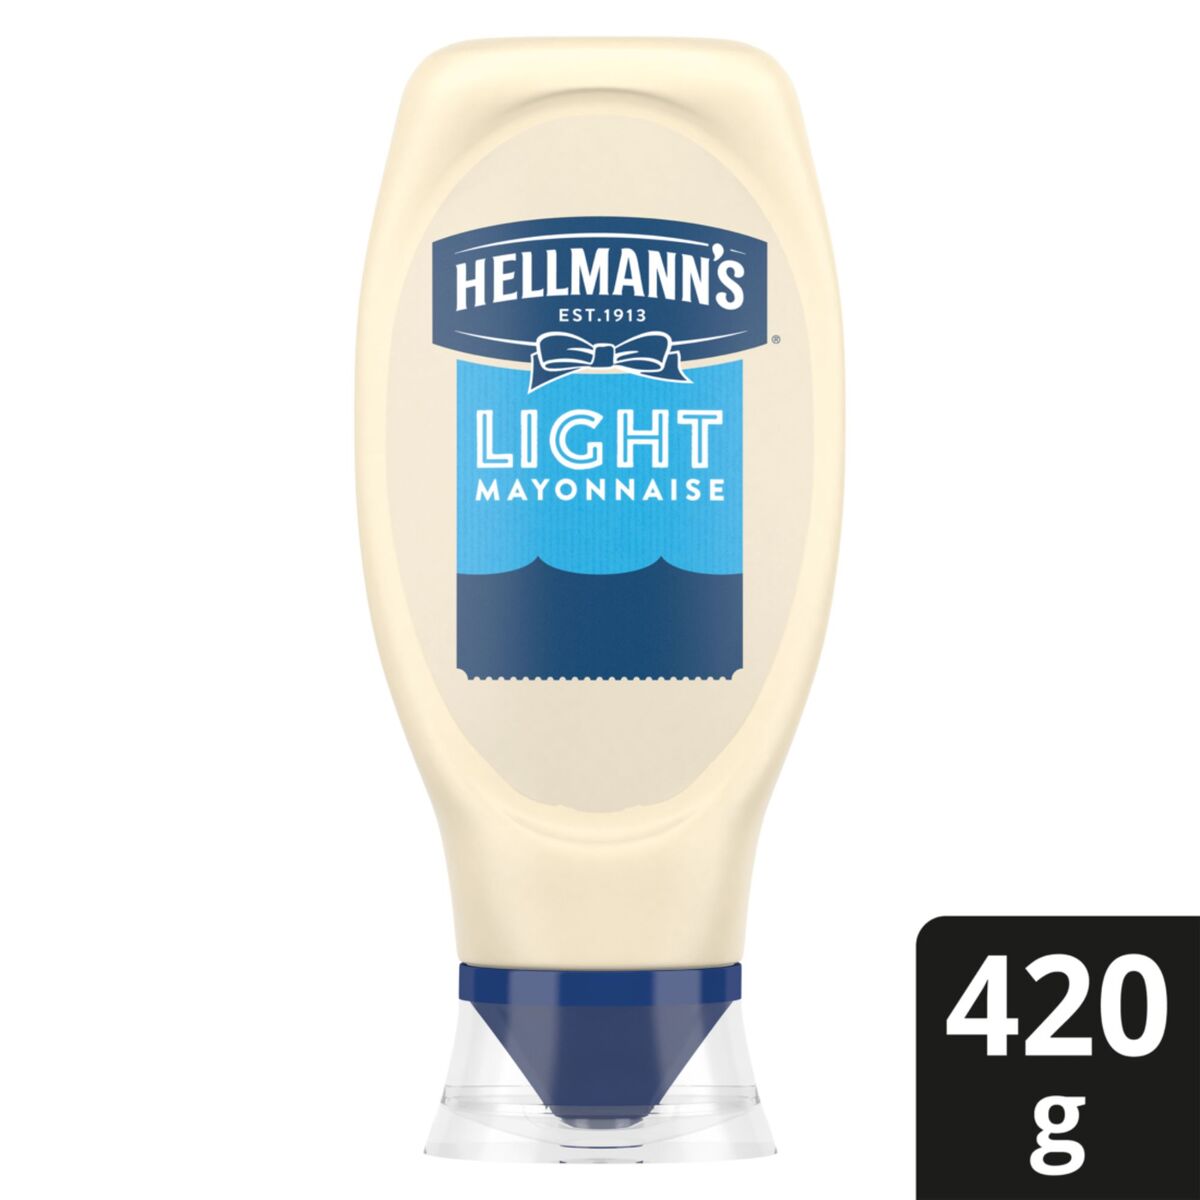 Hellmann's Light Mayonnaise 420 g